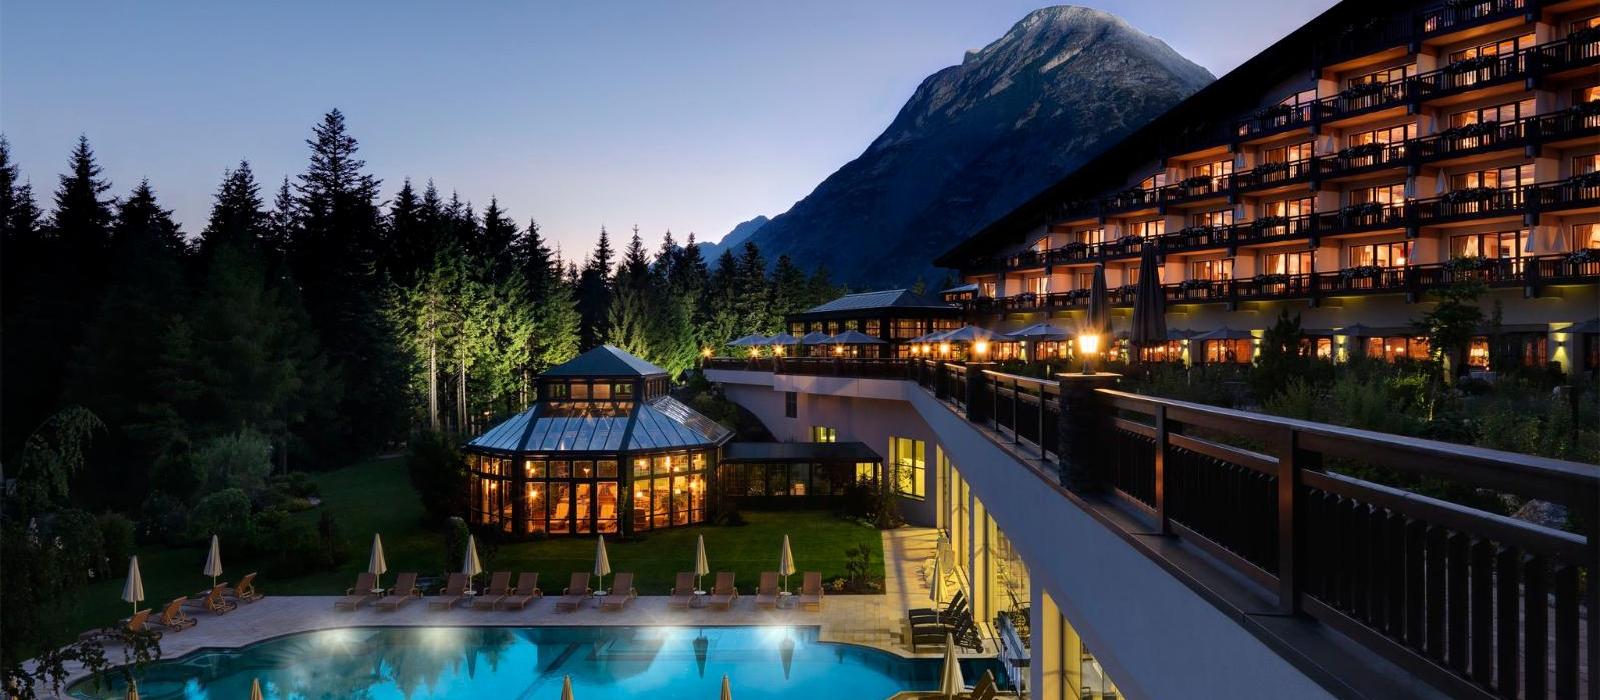 阿尔卑斯山蒂罗尔度假酒店(Interalpen-Hotel Tyrol) 酒店夜景图片  www.lhw.cn